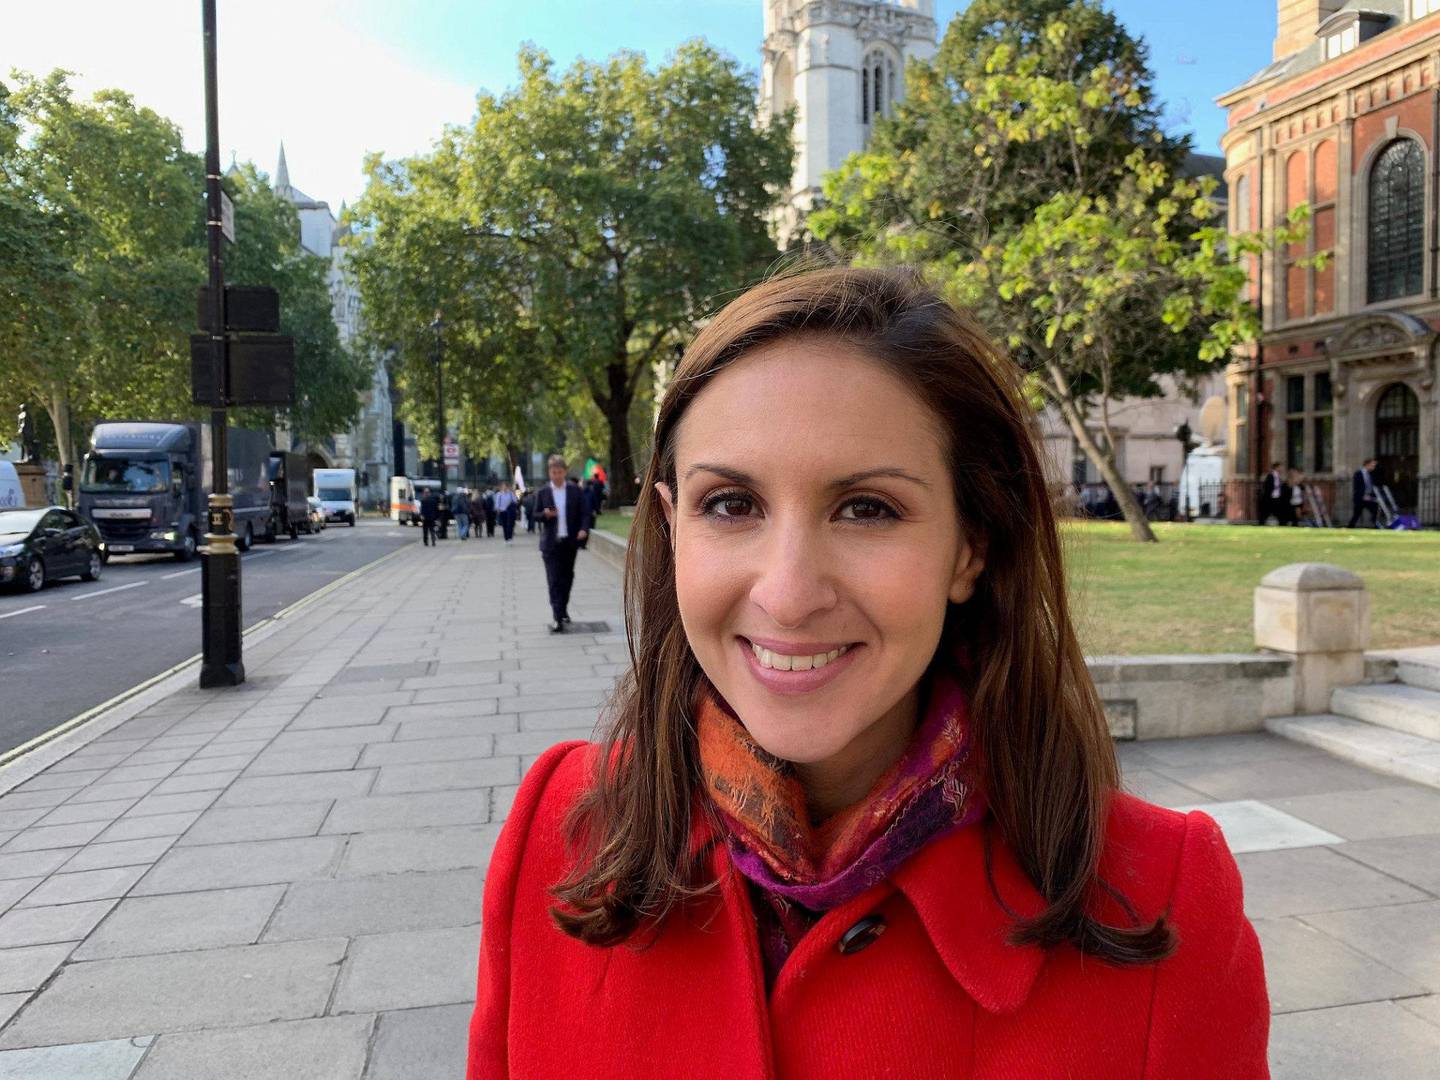 TETT PÅ: Tamara Cohen, politisk reporter og kommentator hos Sky News, følger brexit-dramaet tett.